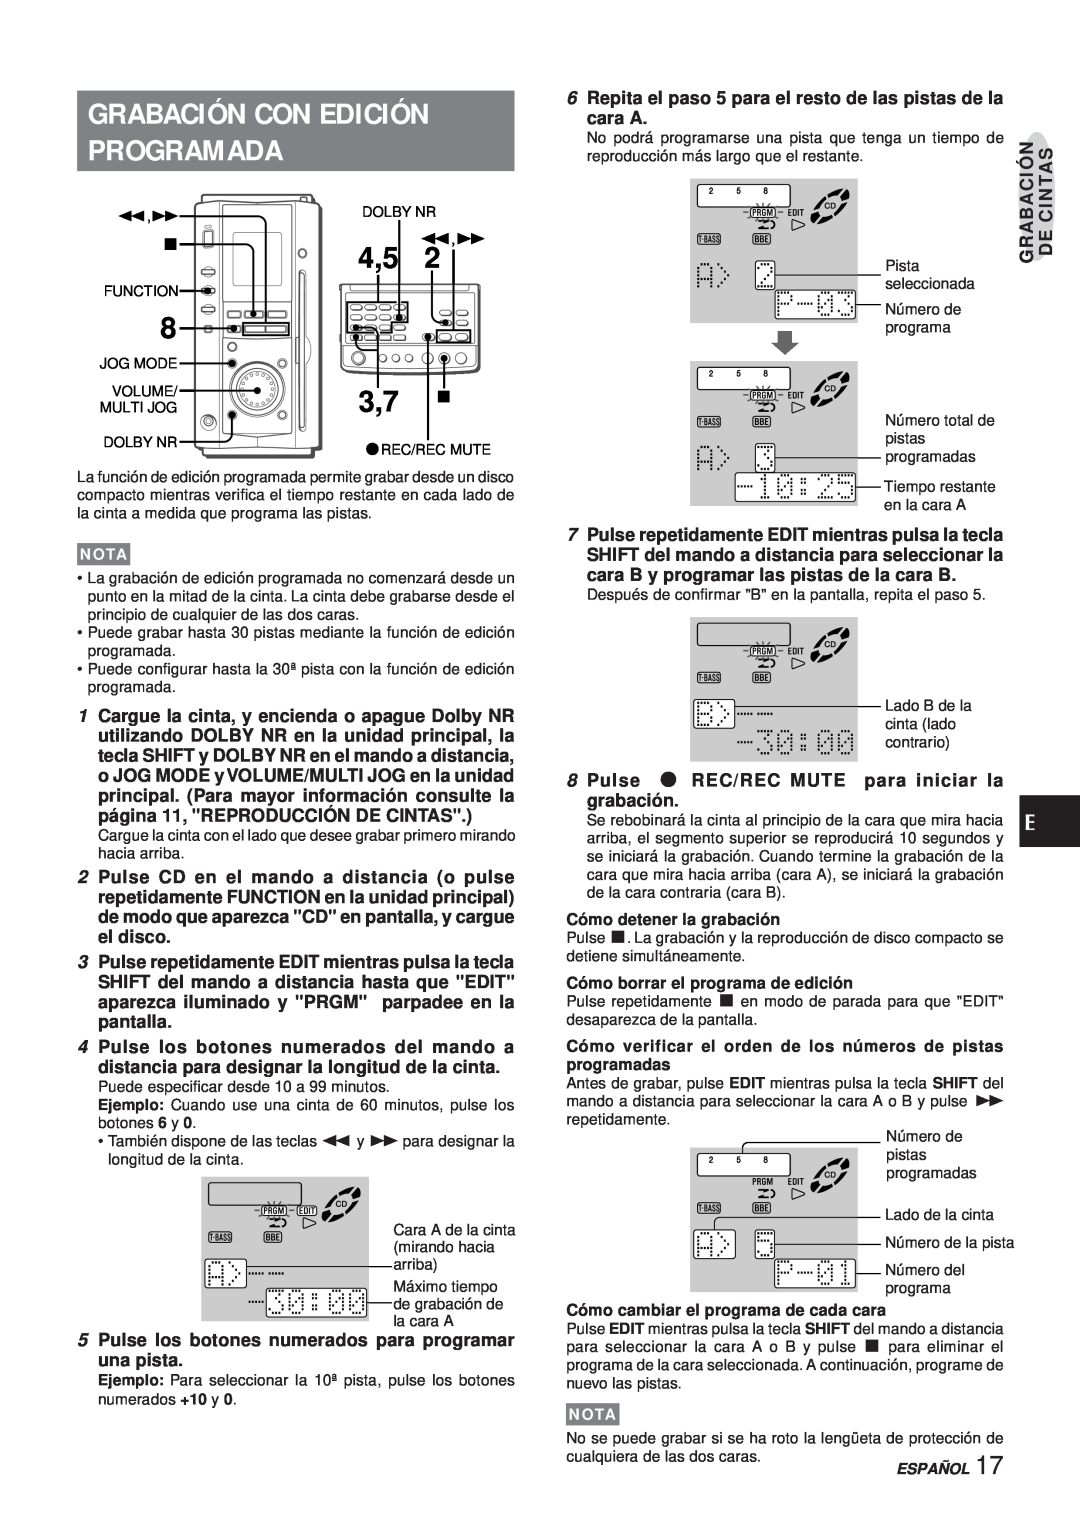 Aiwa XR-MS3 Grabación Con Edición Programada, cara A, Pulse los botones numerados del mando a, Cómo detener la grabación 